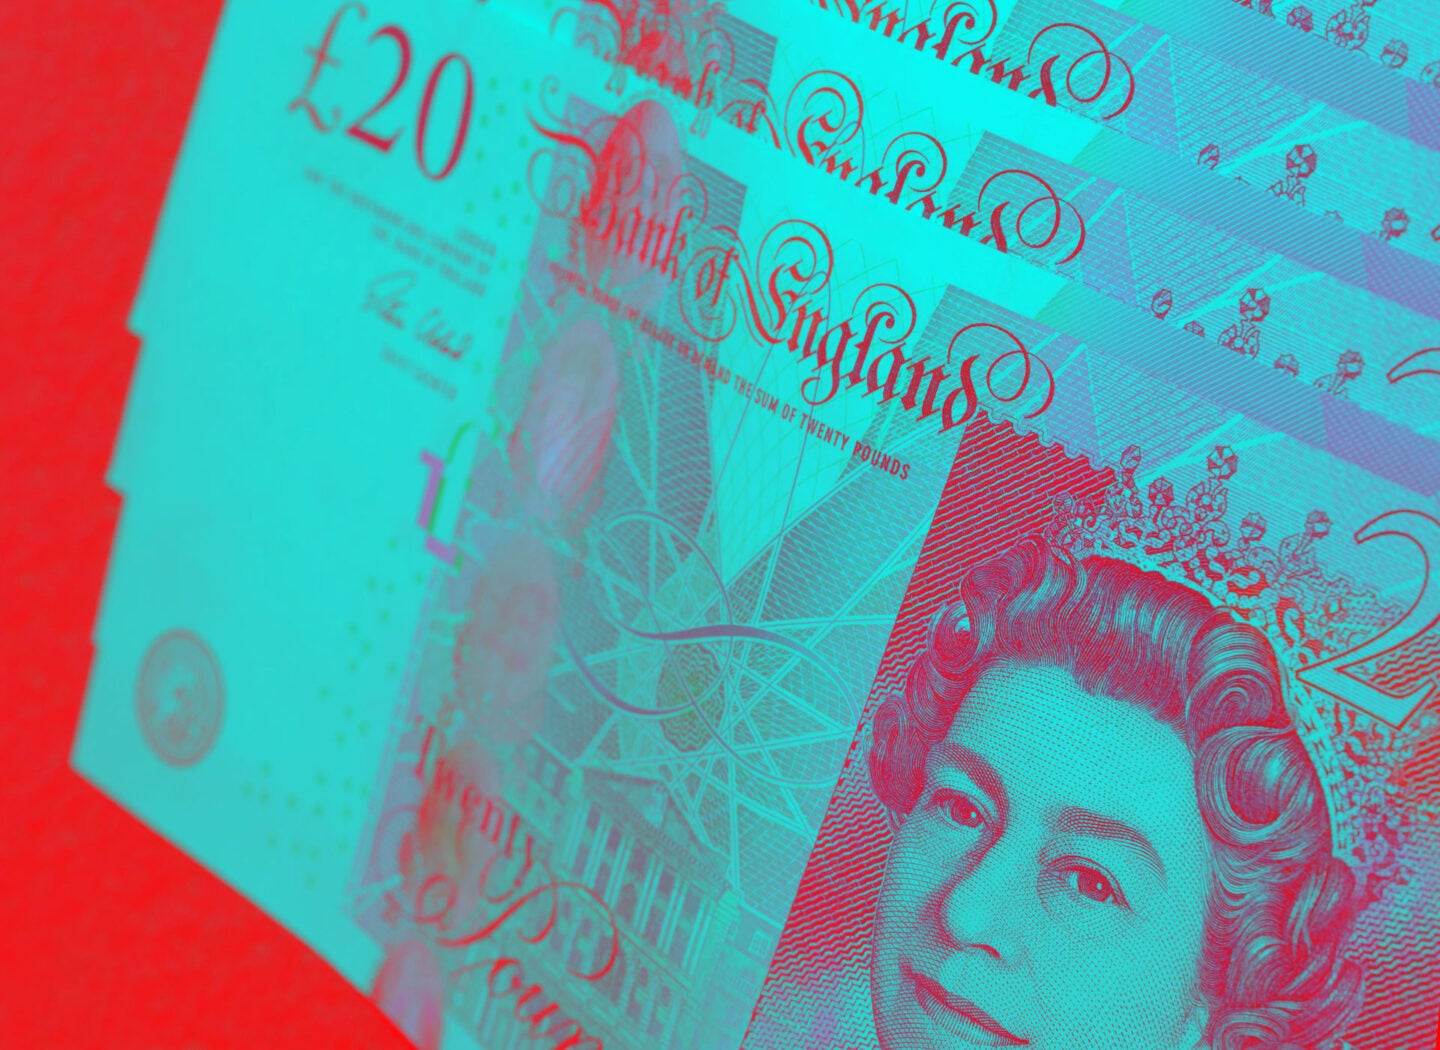 Virtual sterling? Bank of England ponders digital currency